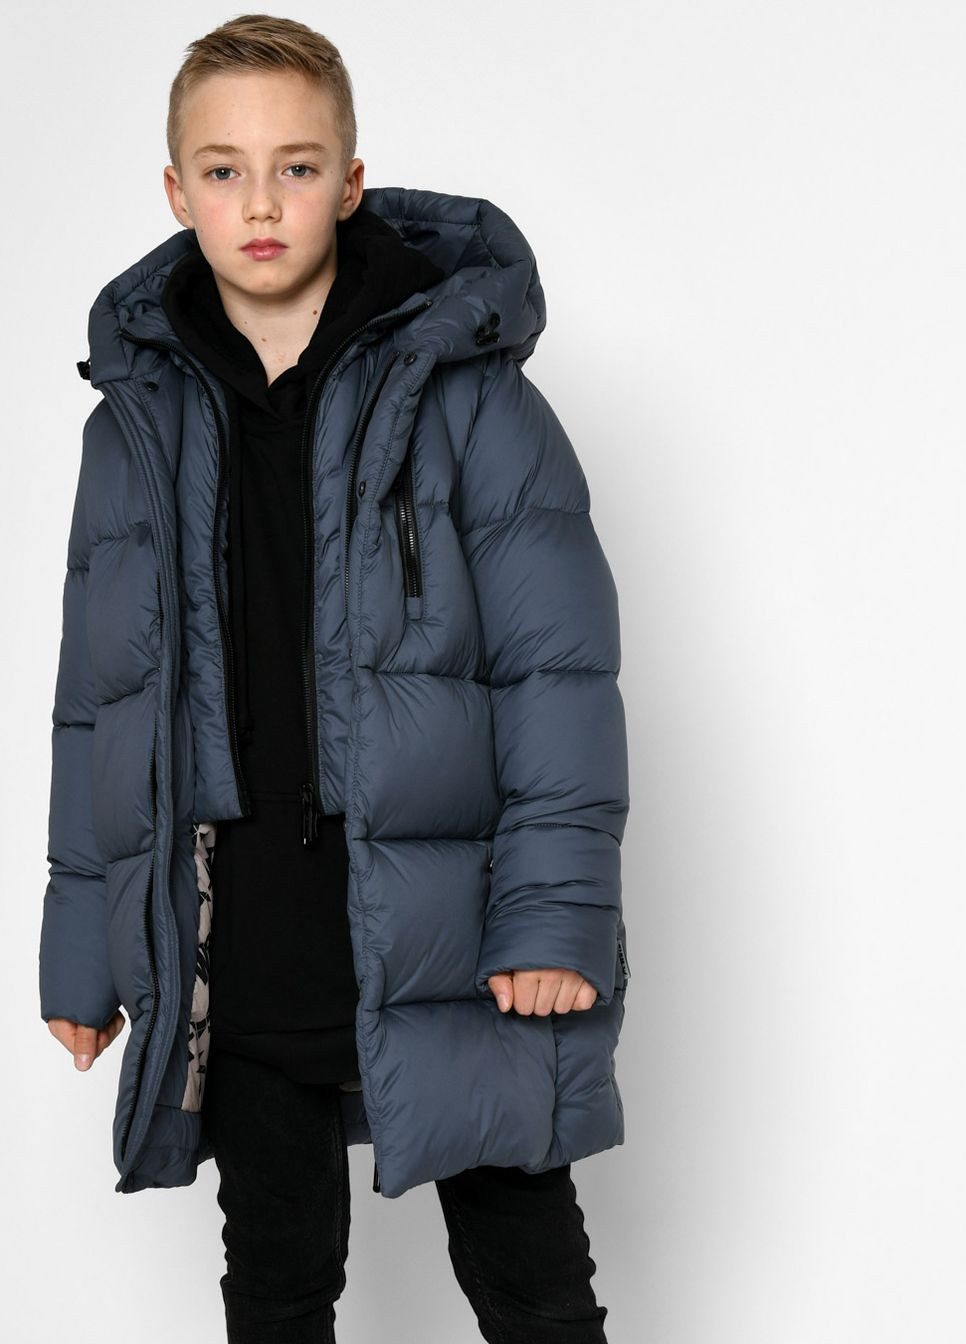 Синяя зимняя пуховая зимняя куртка для мальчика 9120 116-122 см синий 68550 X-Woyz